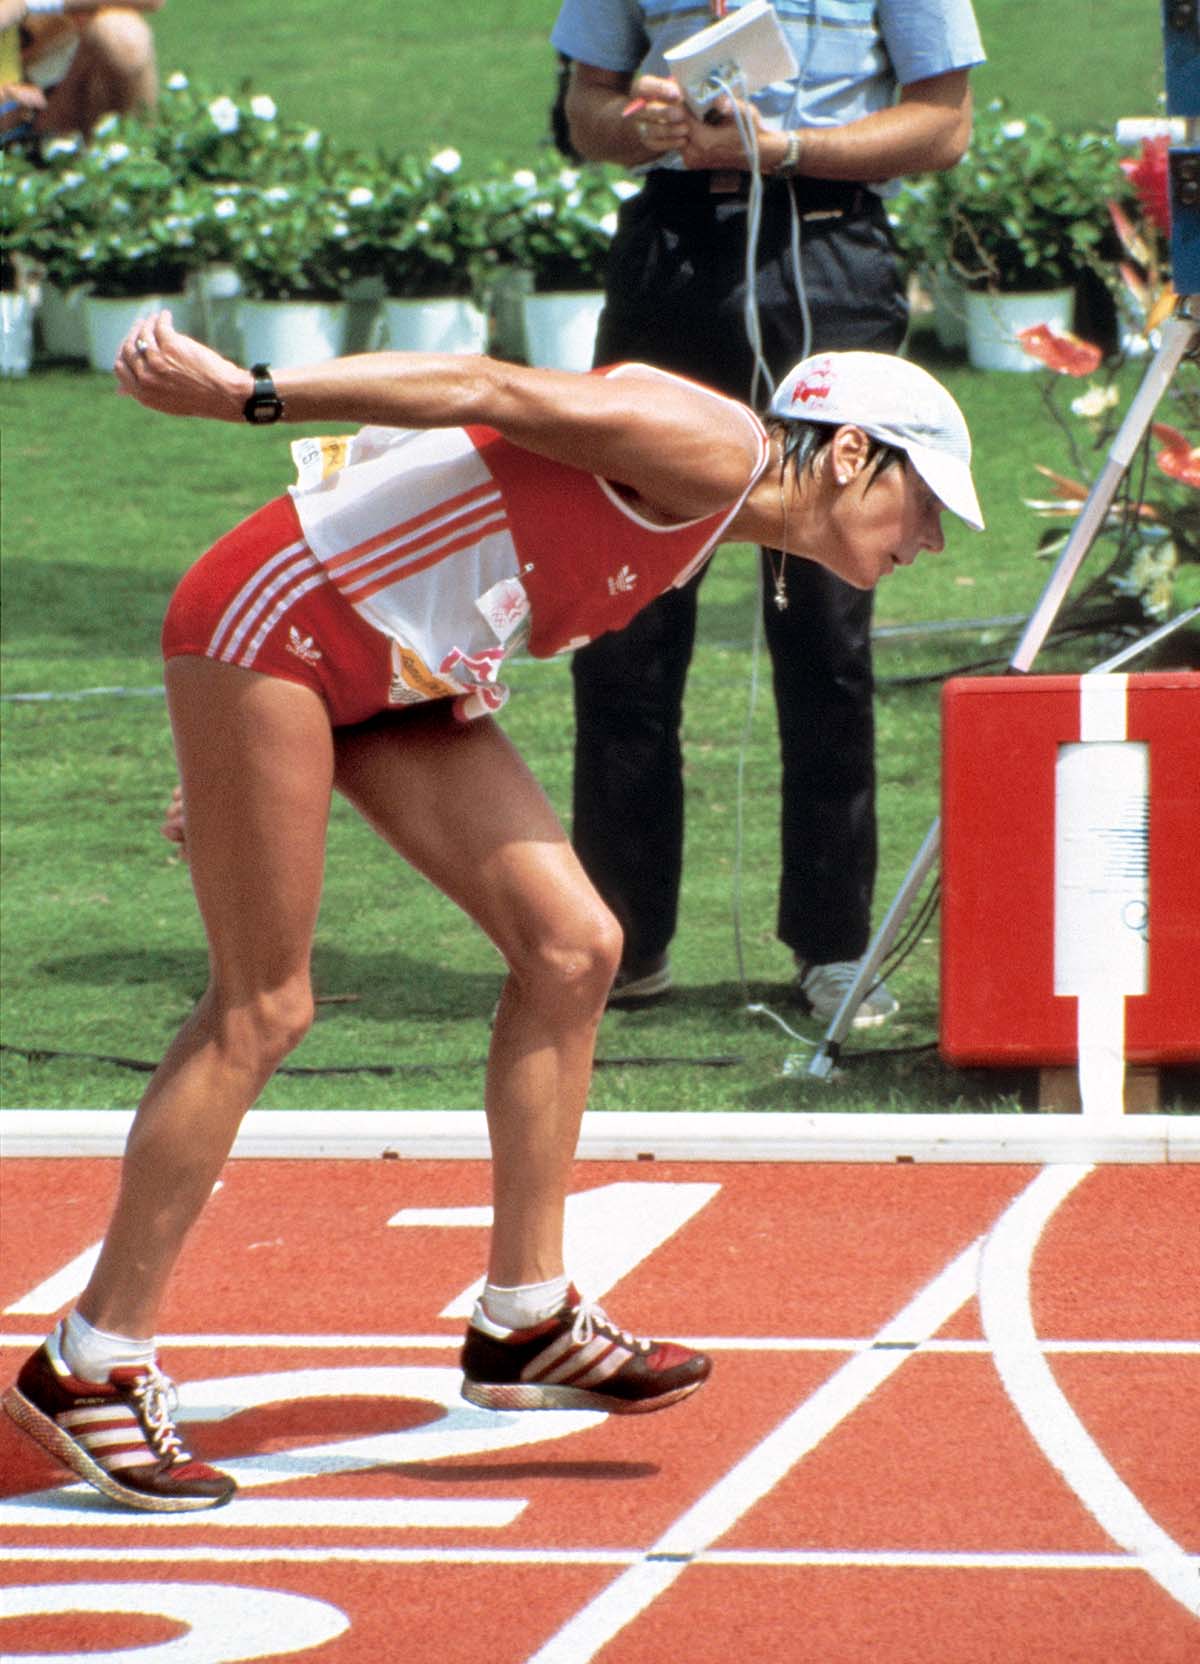 25415625 - Keystone-SDA/EPU/Str - 1984 während des ersten olympischen Frauenmarathons überquert die Schweizerin Gaby Andersen-Schiess völlig dehydriert und entkräftet die Ziellinie. Sie benötigte für die letzten 500 m sieben Minuten und lieferte unfreiwillig Bilder, die noch heute immer wieder bewegen.